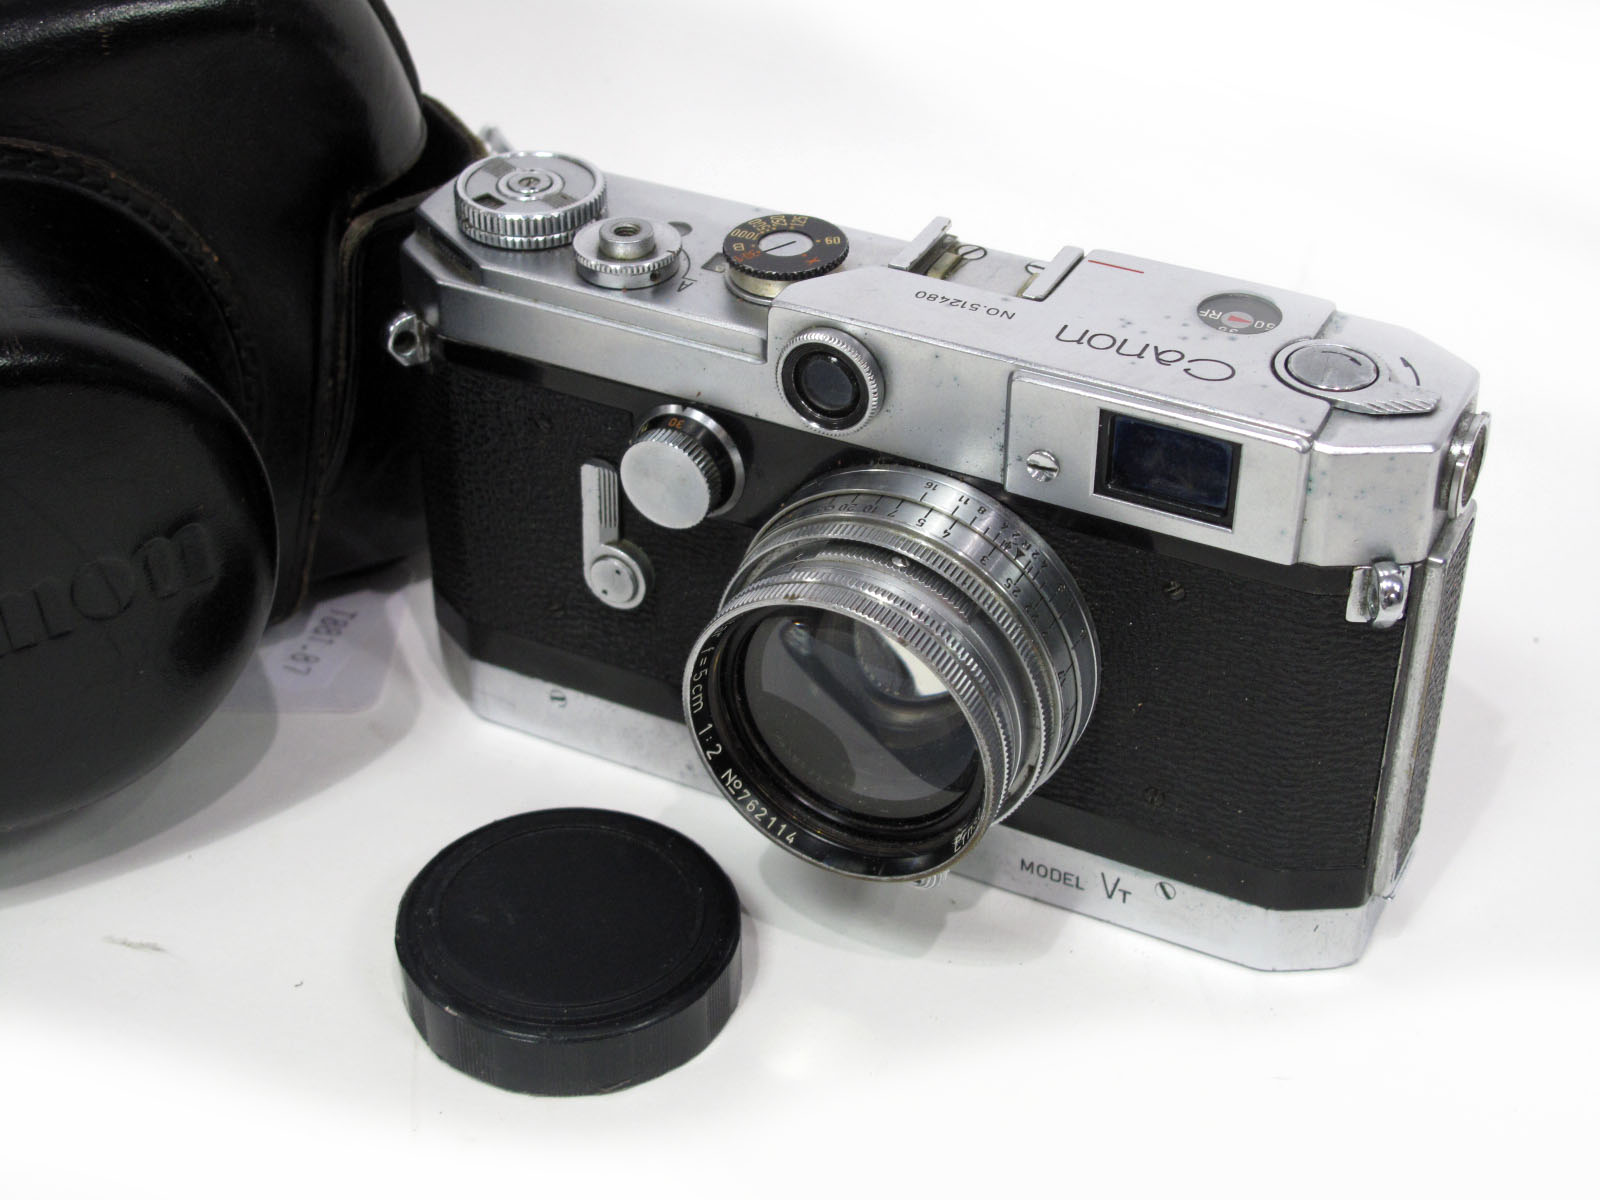 Canon Model VT, with Ernst Leitz f=5cm lens.